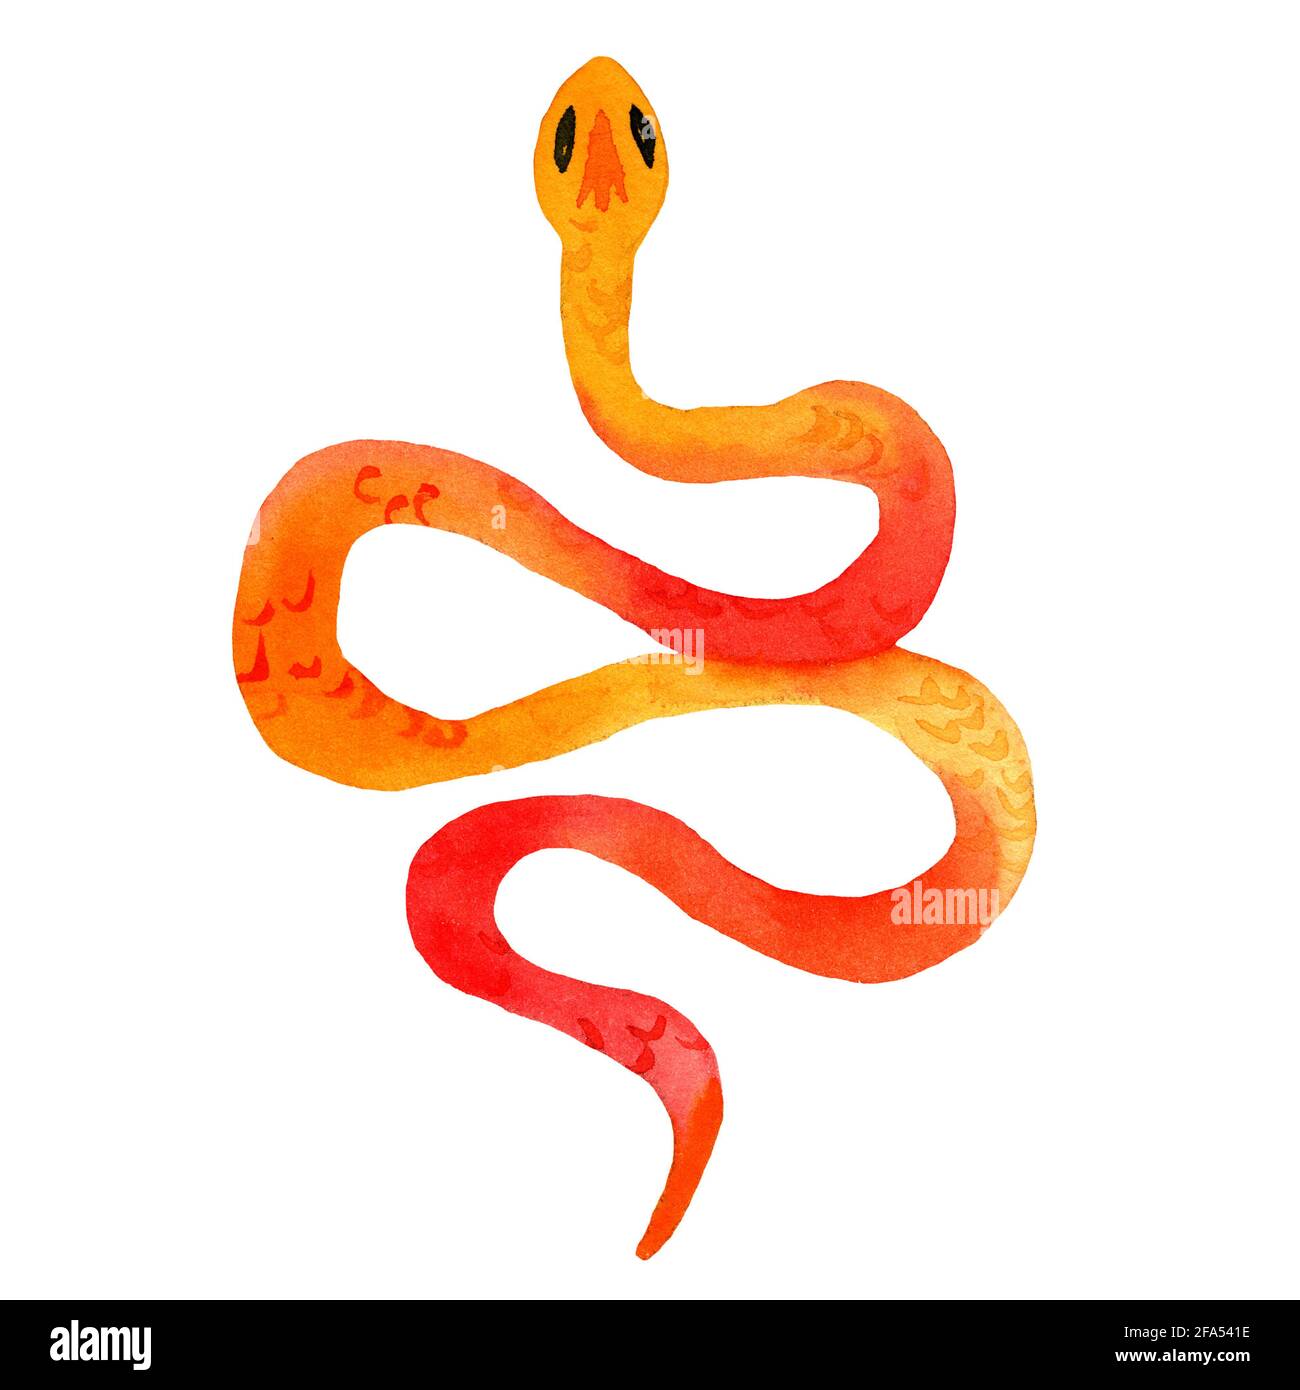 Aquarelle dessin à la main de serpents de couleur orange avec texture de peau. Le serpent est en forme d'anneau. Animal de style dessin animé. Banque D'Images